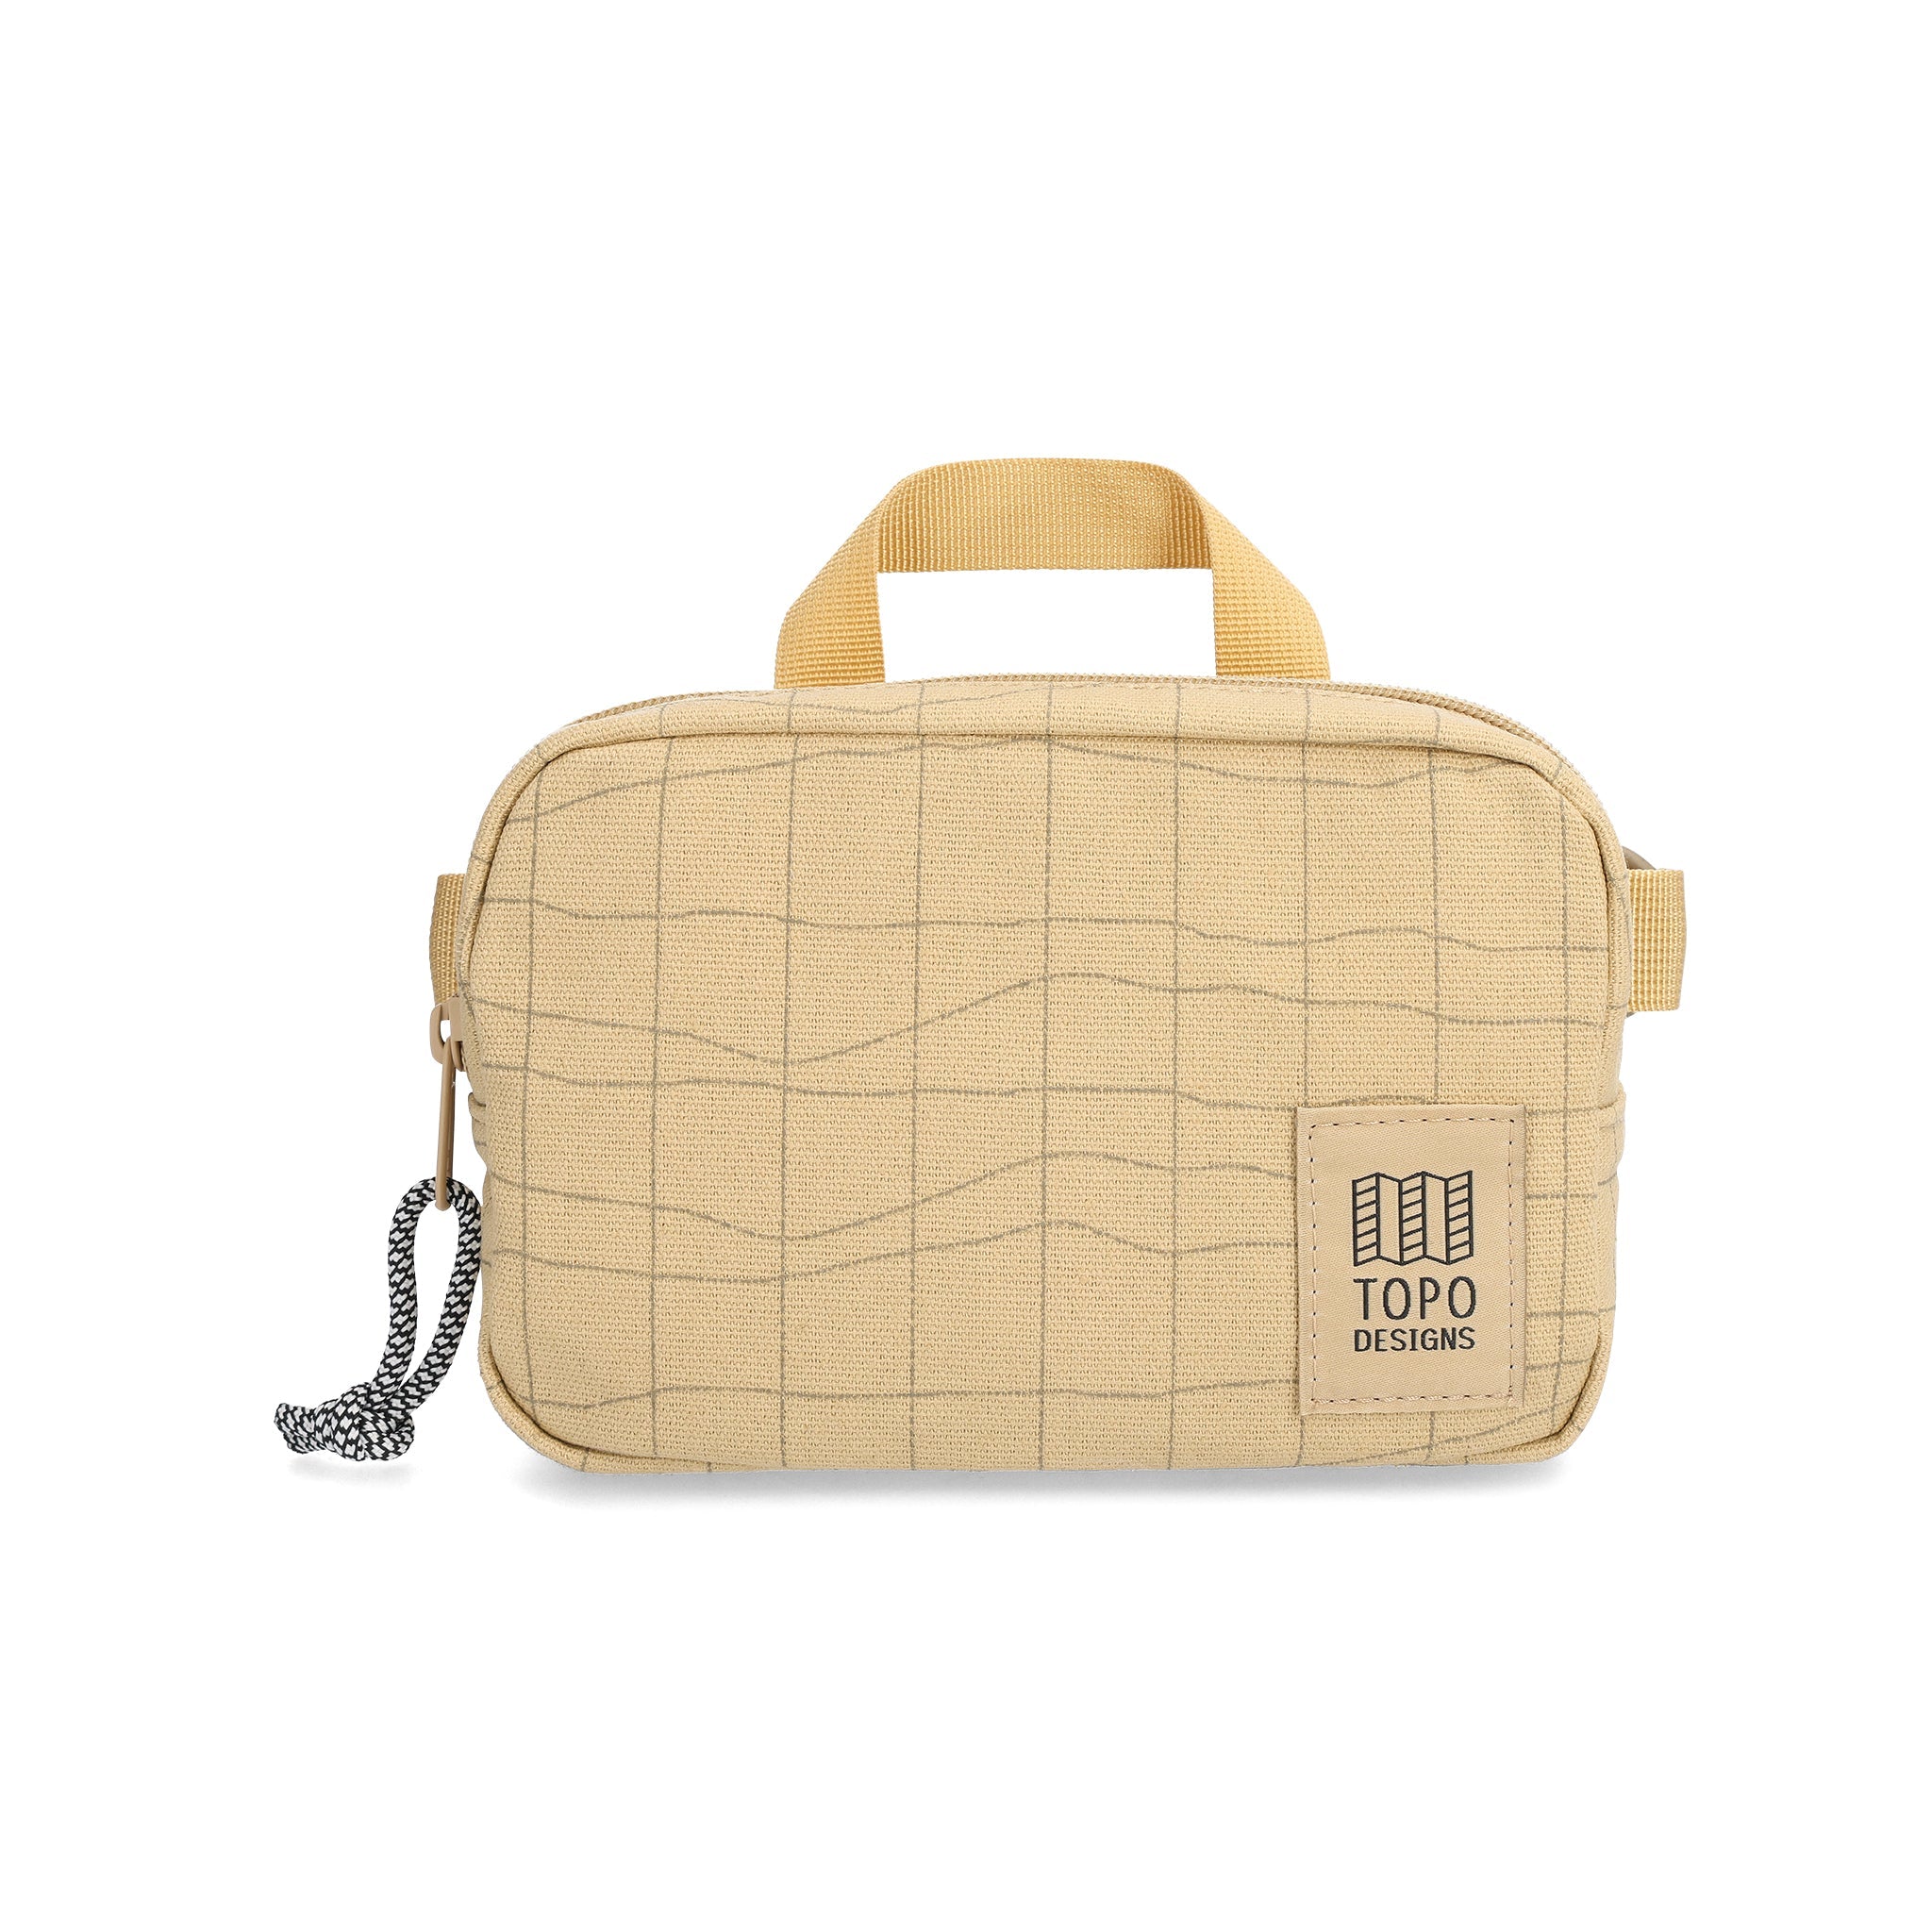 Front View of Topo Designs Dirt Belt Bag in "Sahara Terrain"